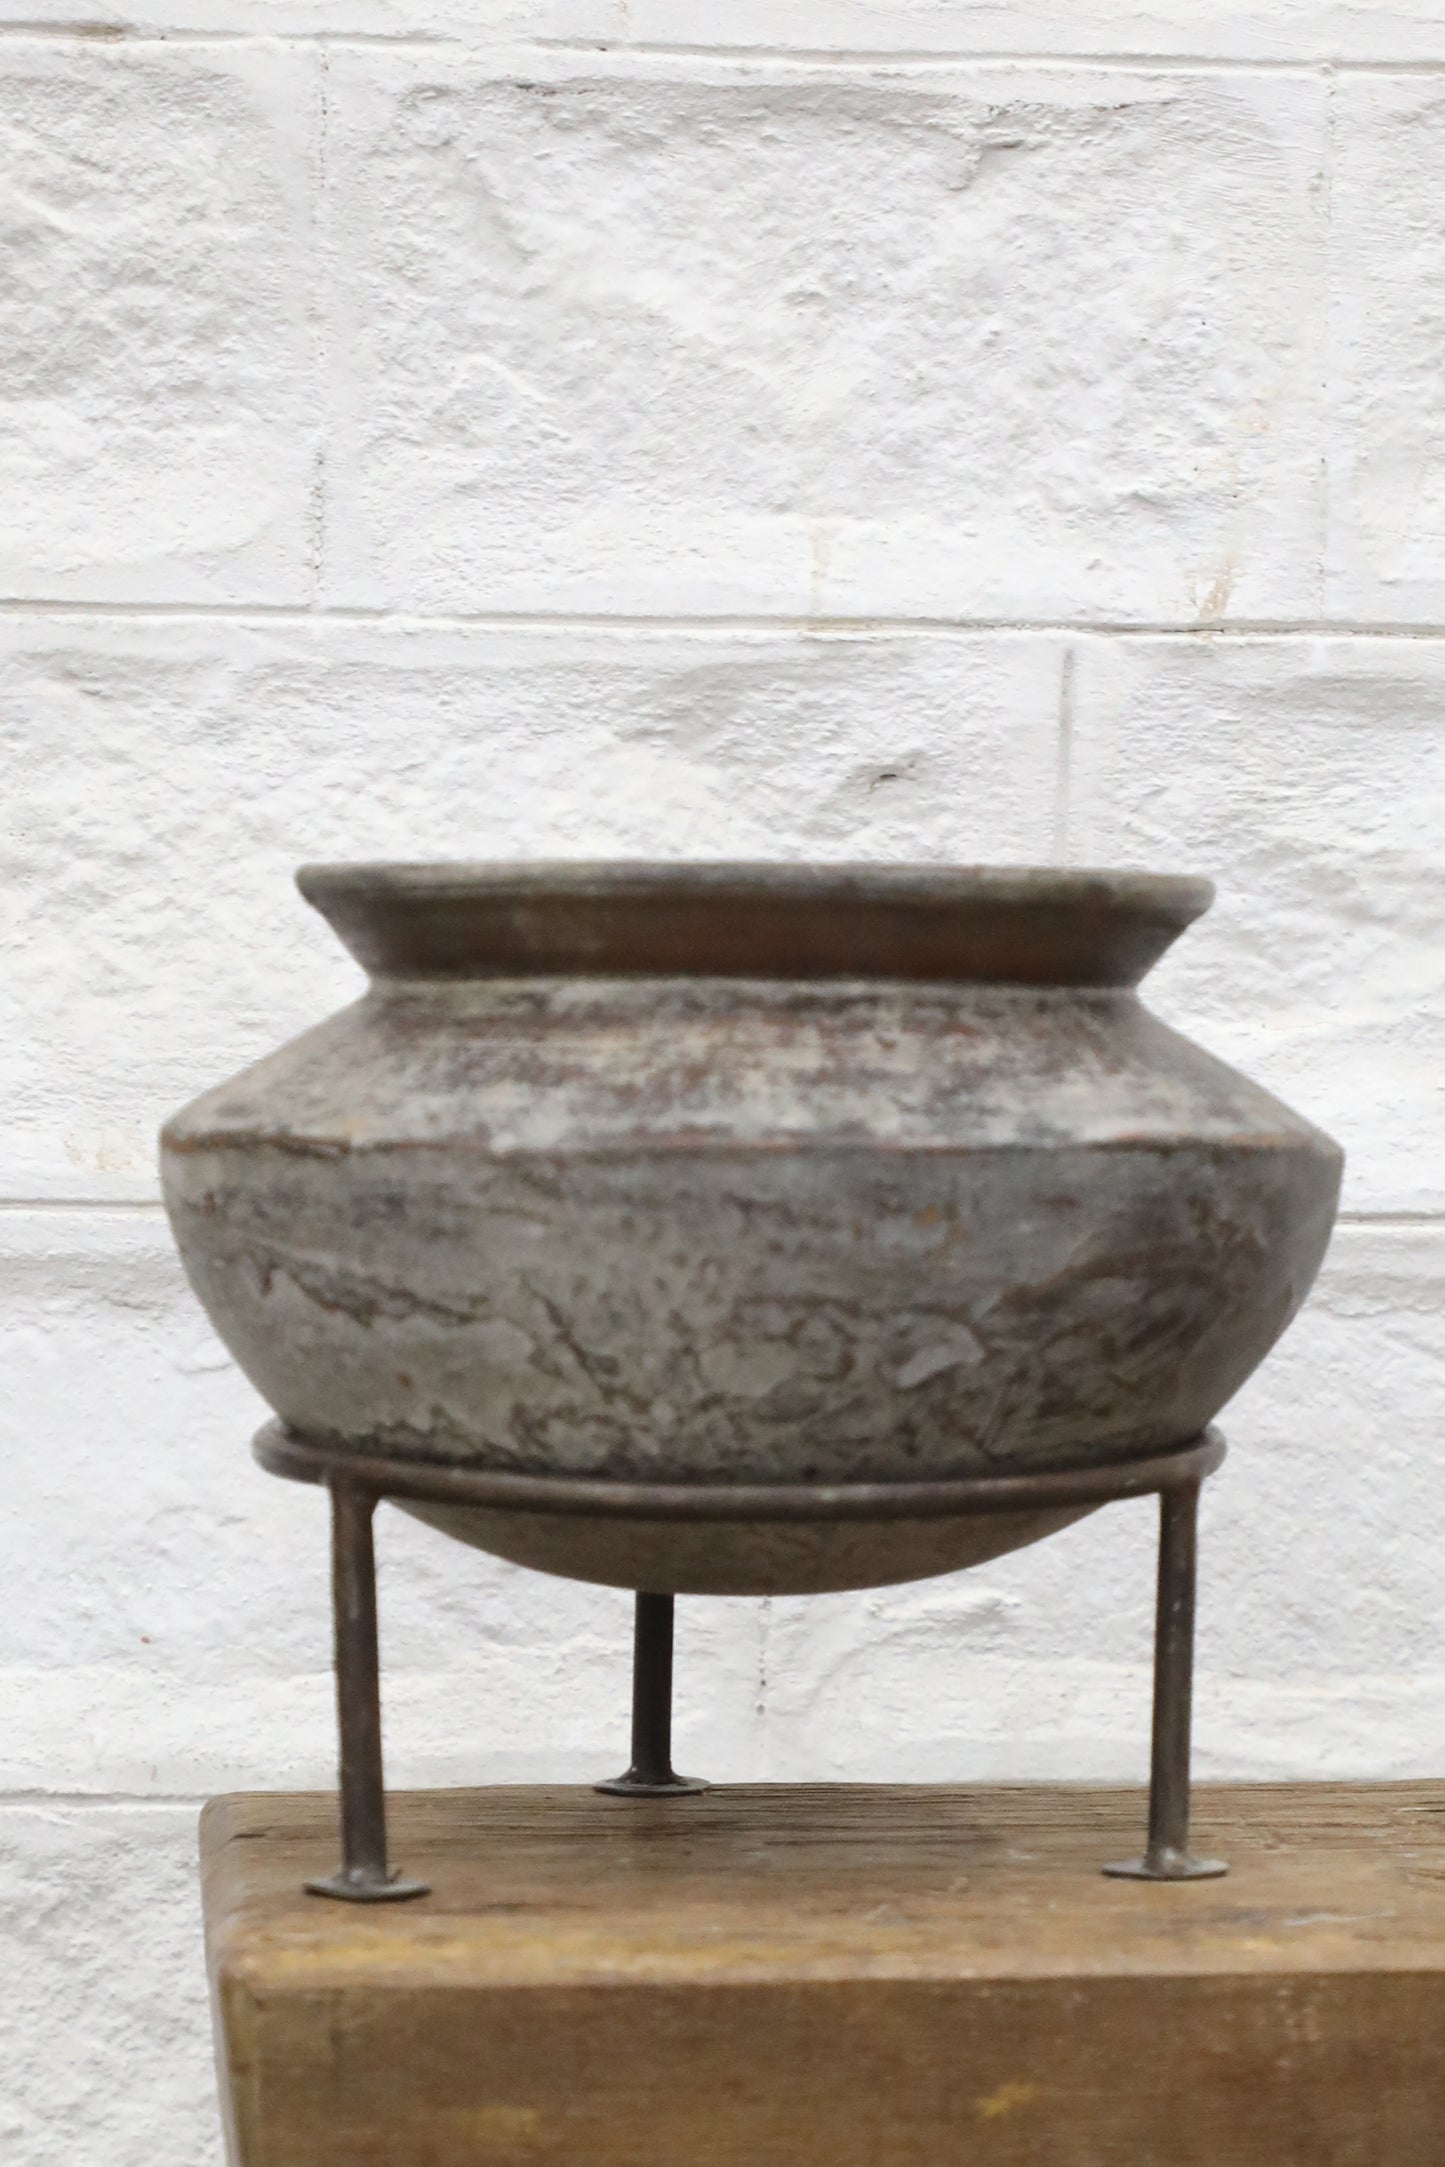 Grand Clay Pot